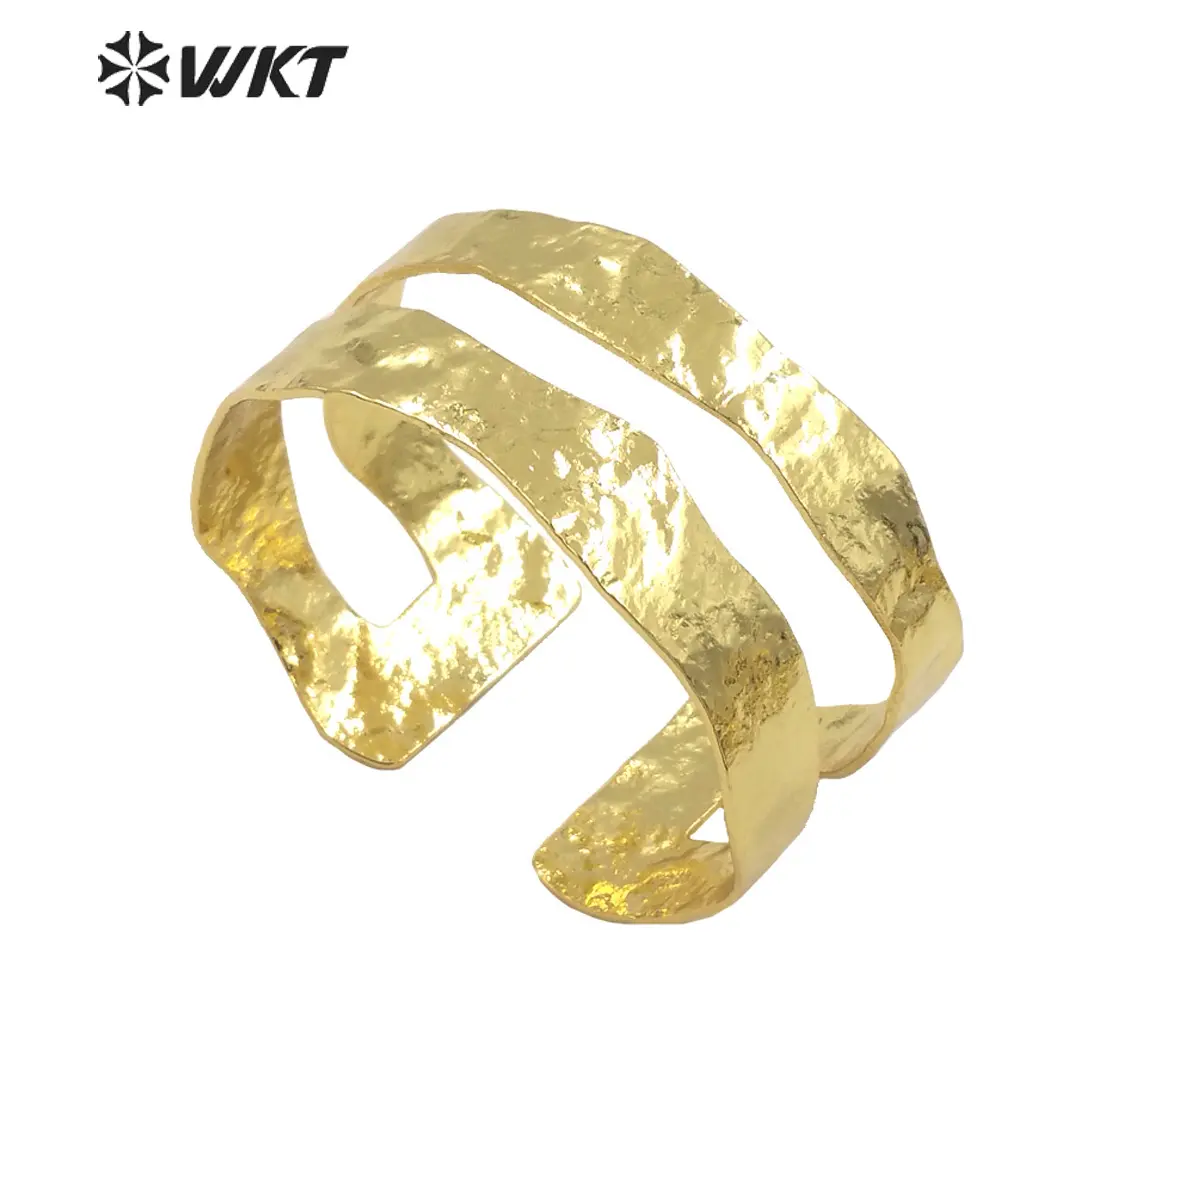 WT-B654 оптовая продажа, 18 карат, натуральный позолоченный желтый латунный браслет, модный простой металлический браслет для вечеринки